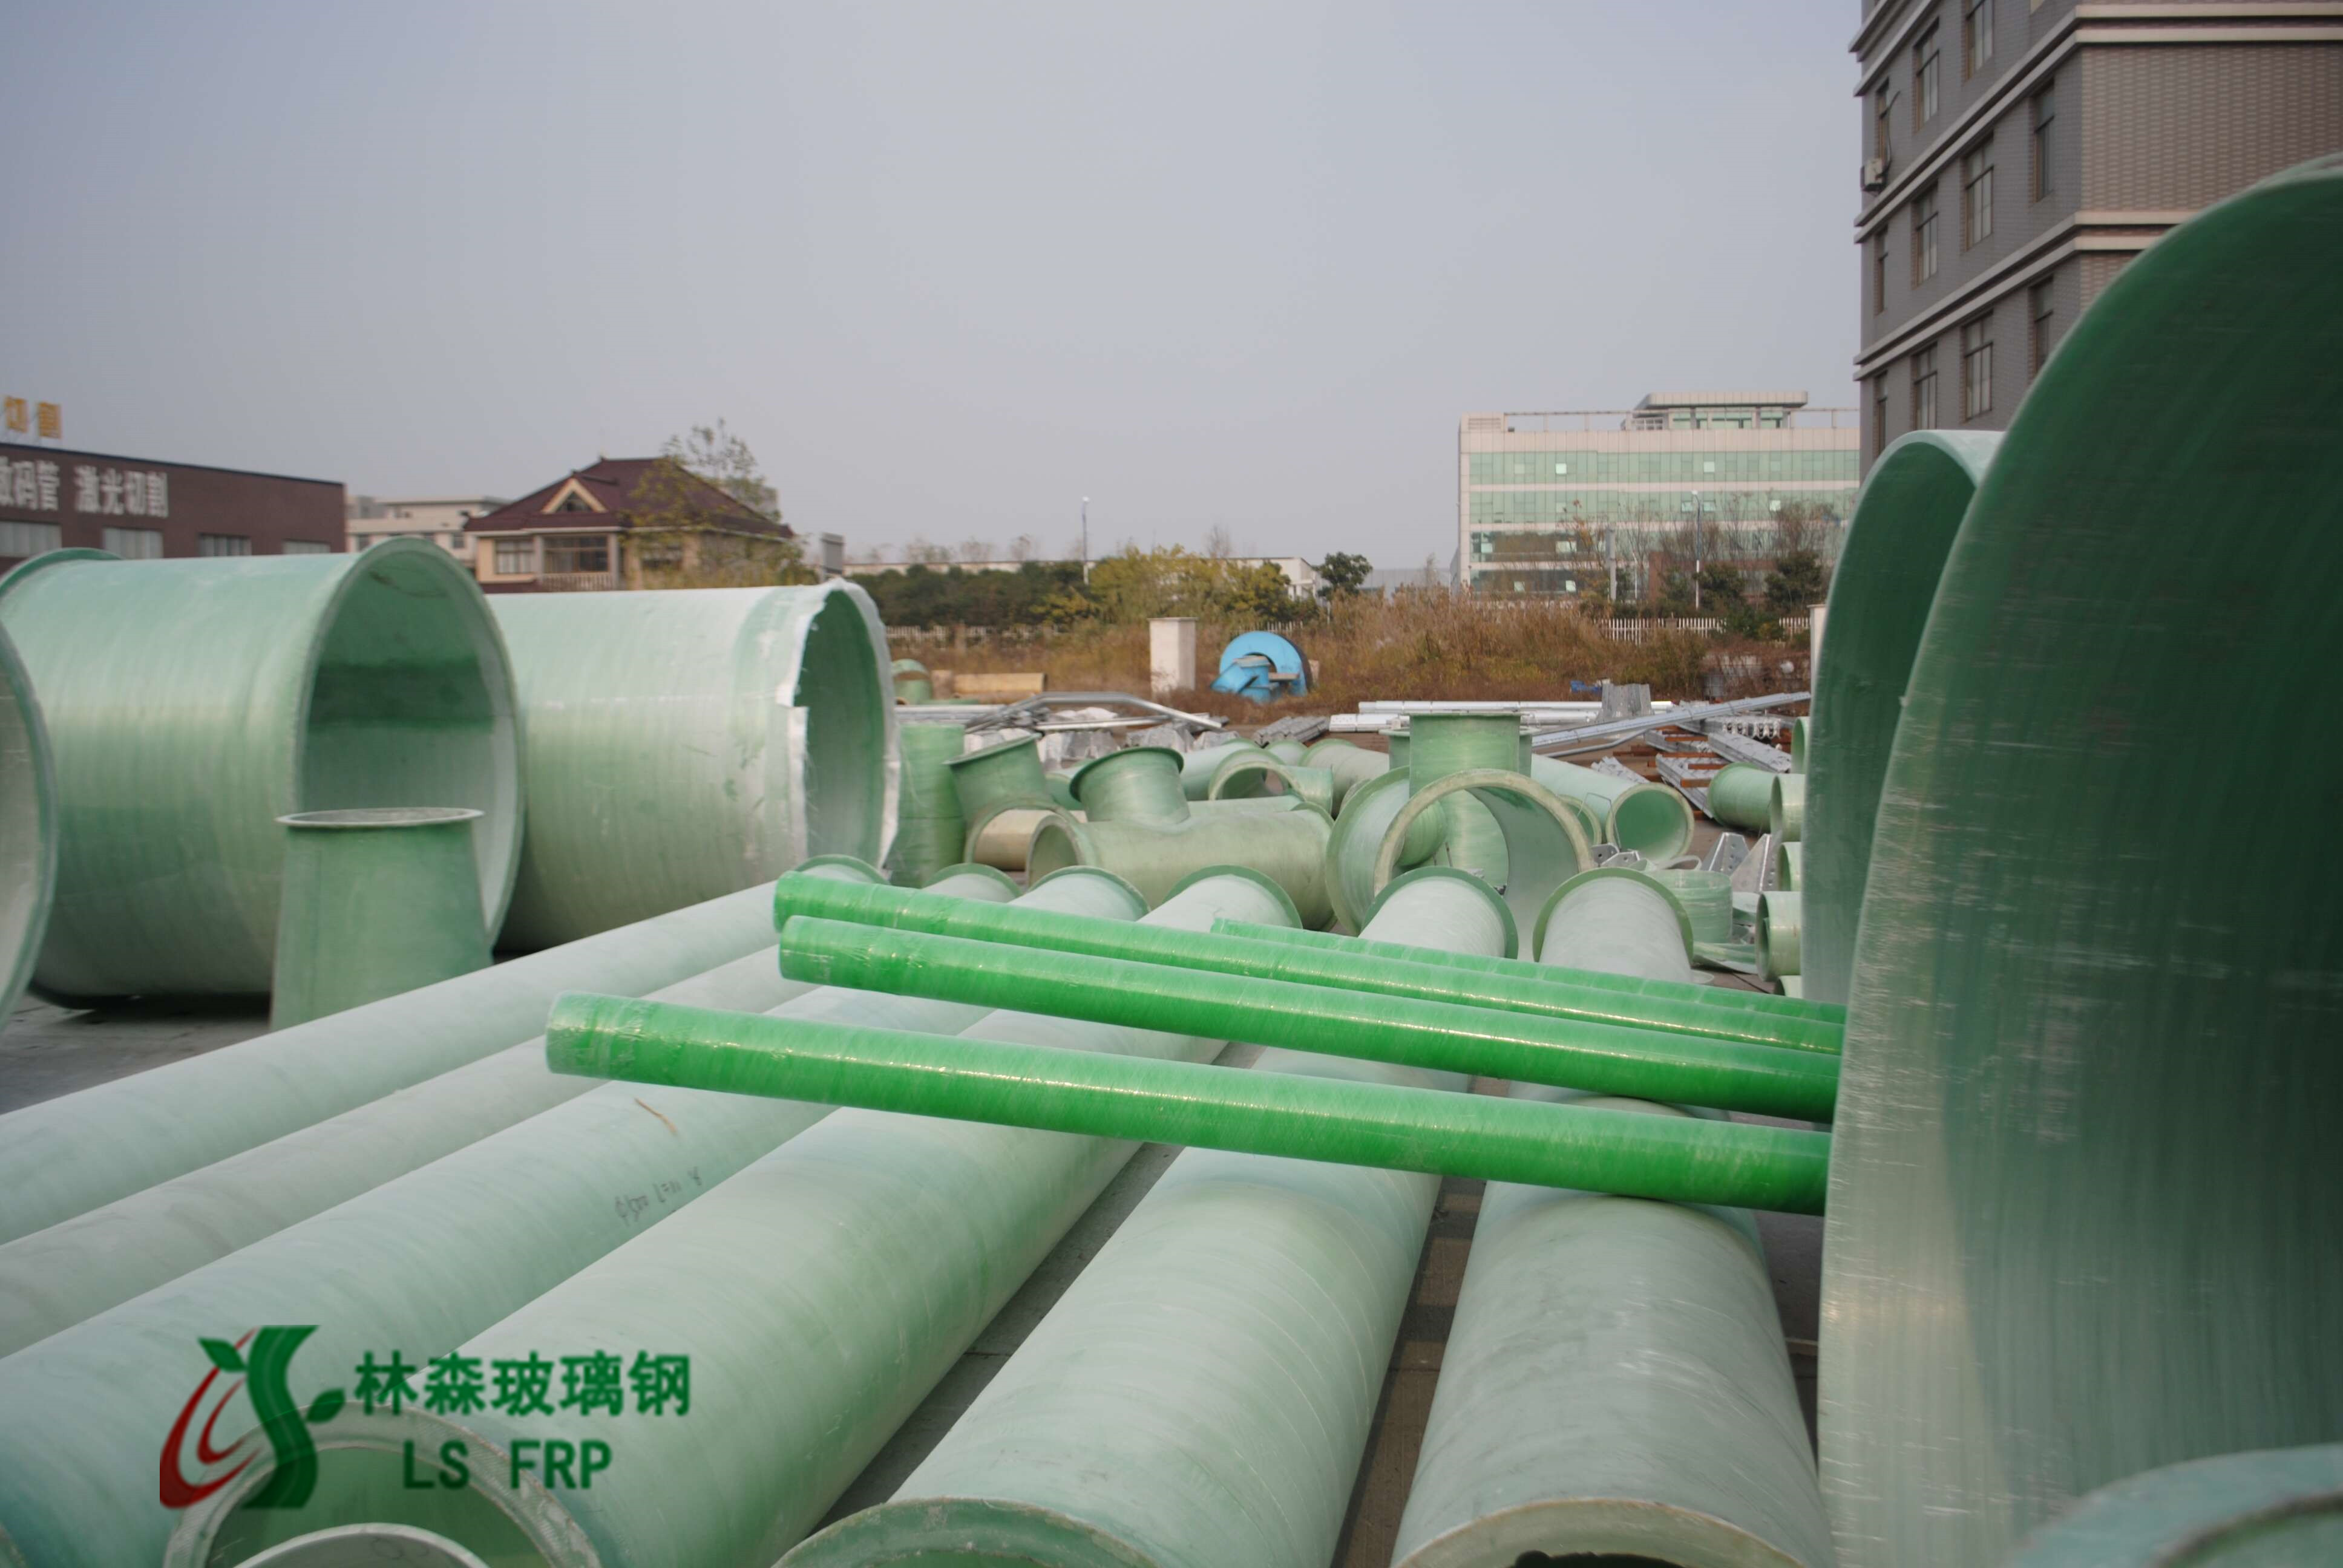 玻璃钢缠绕管/玻璃钢管道厂家江苏林森低价批发 尺寸可定制